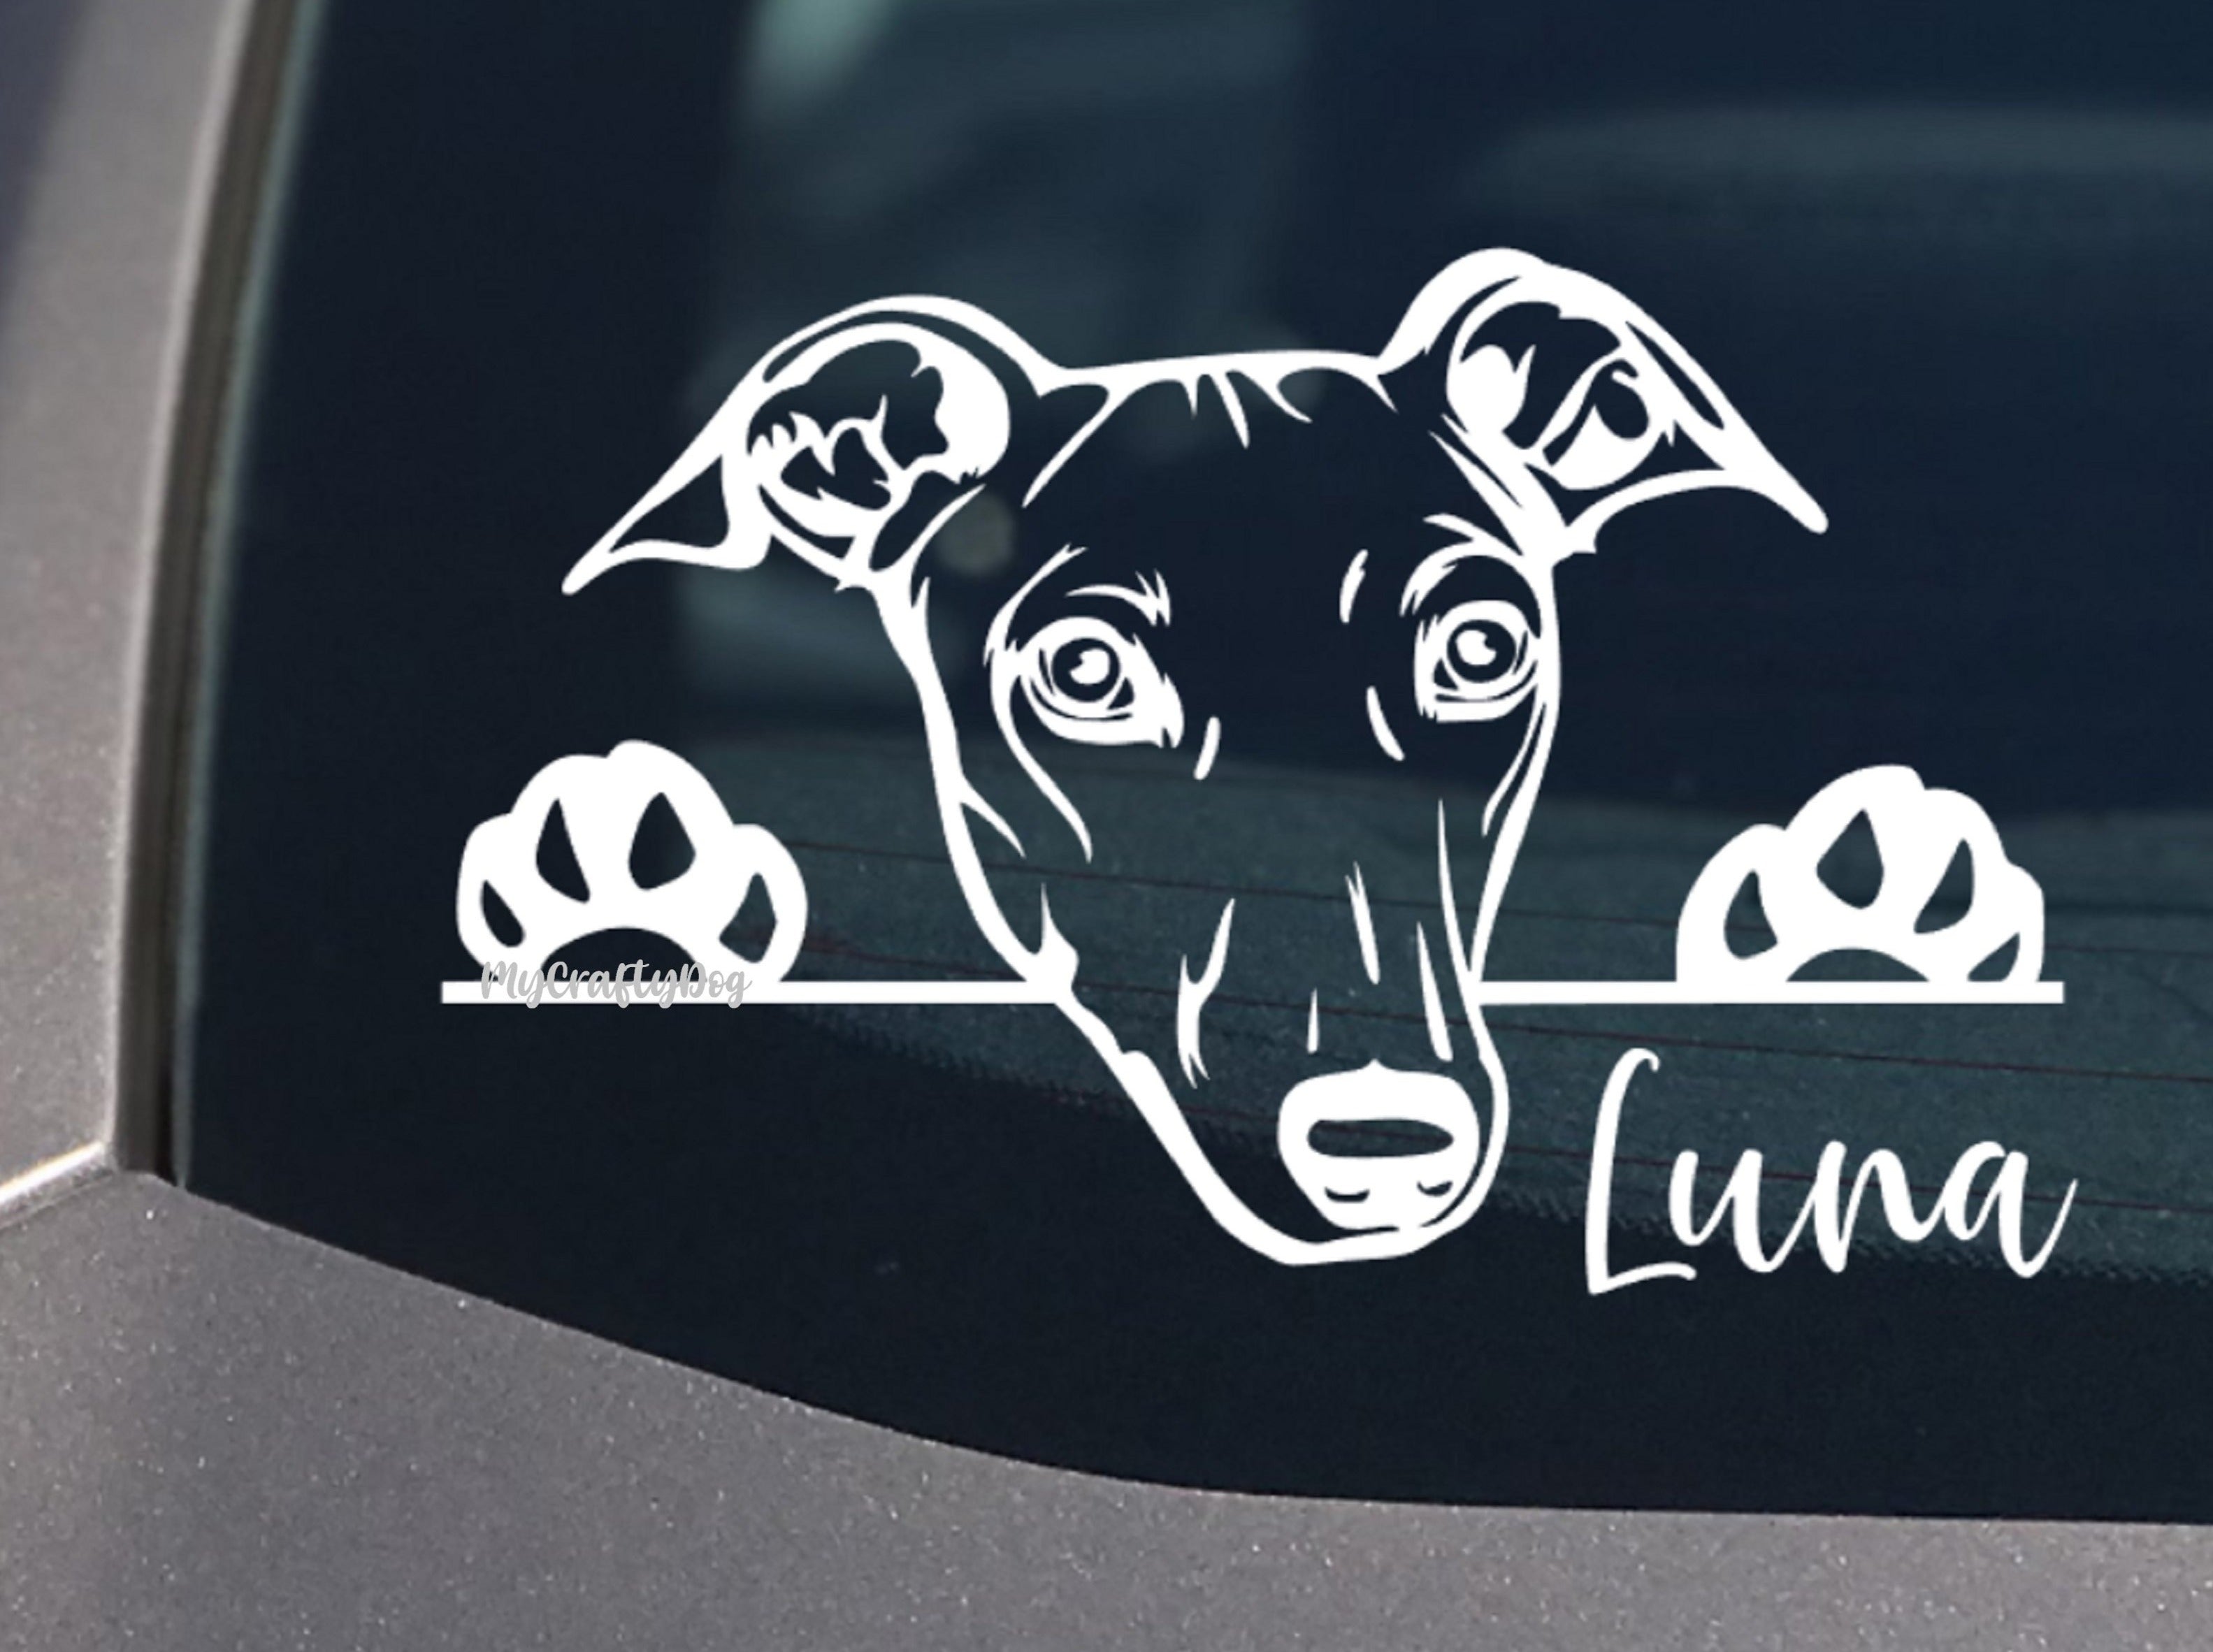 Peeking Greyhound Car Sticker - My Crafty Dog